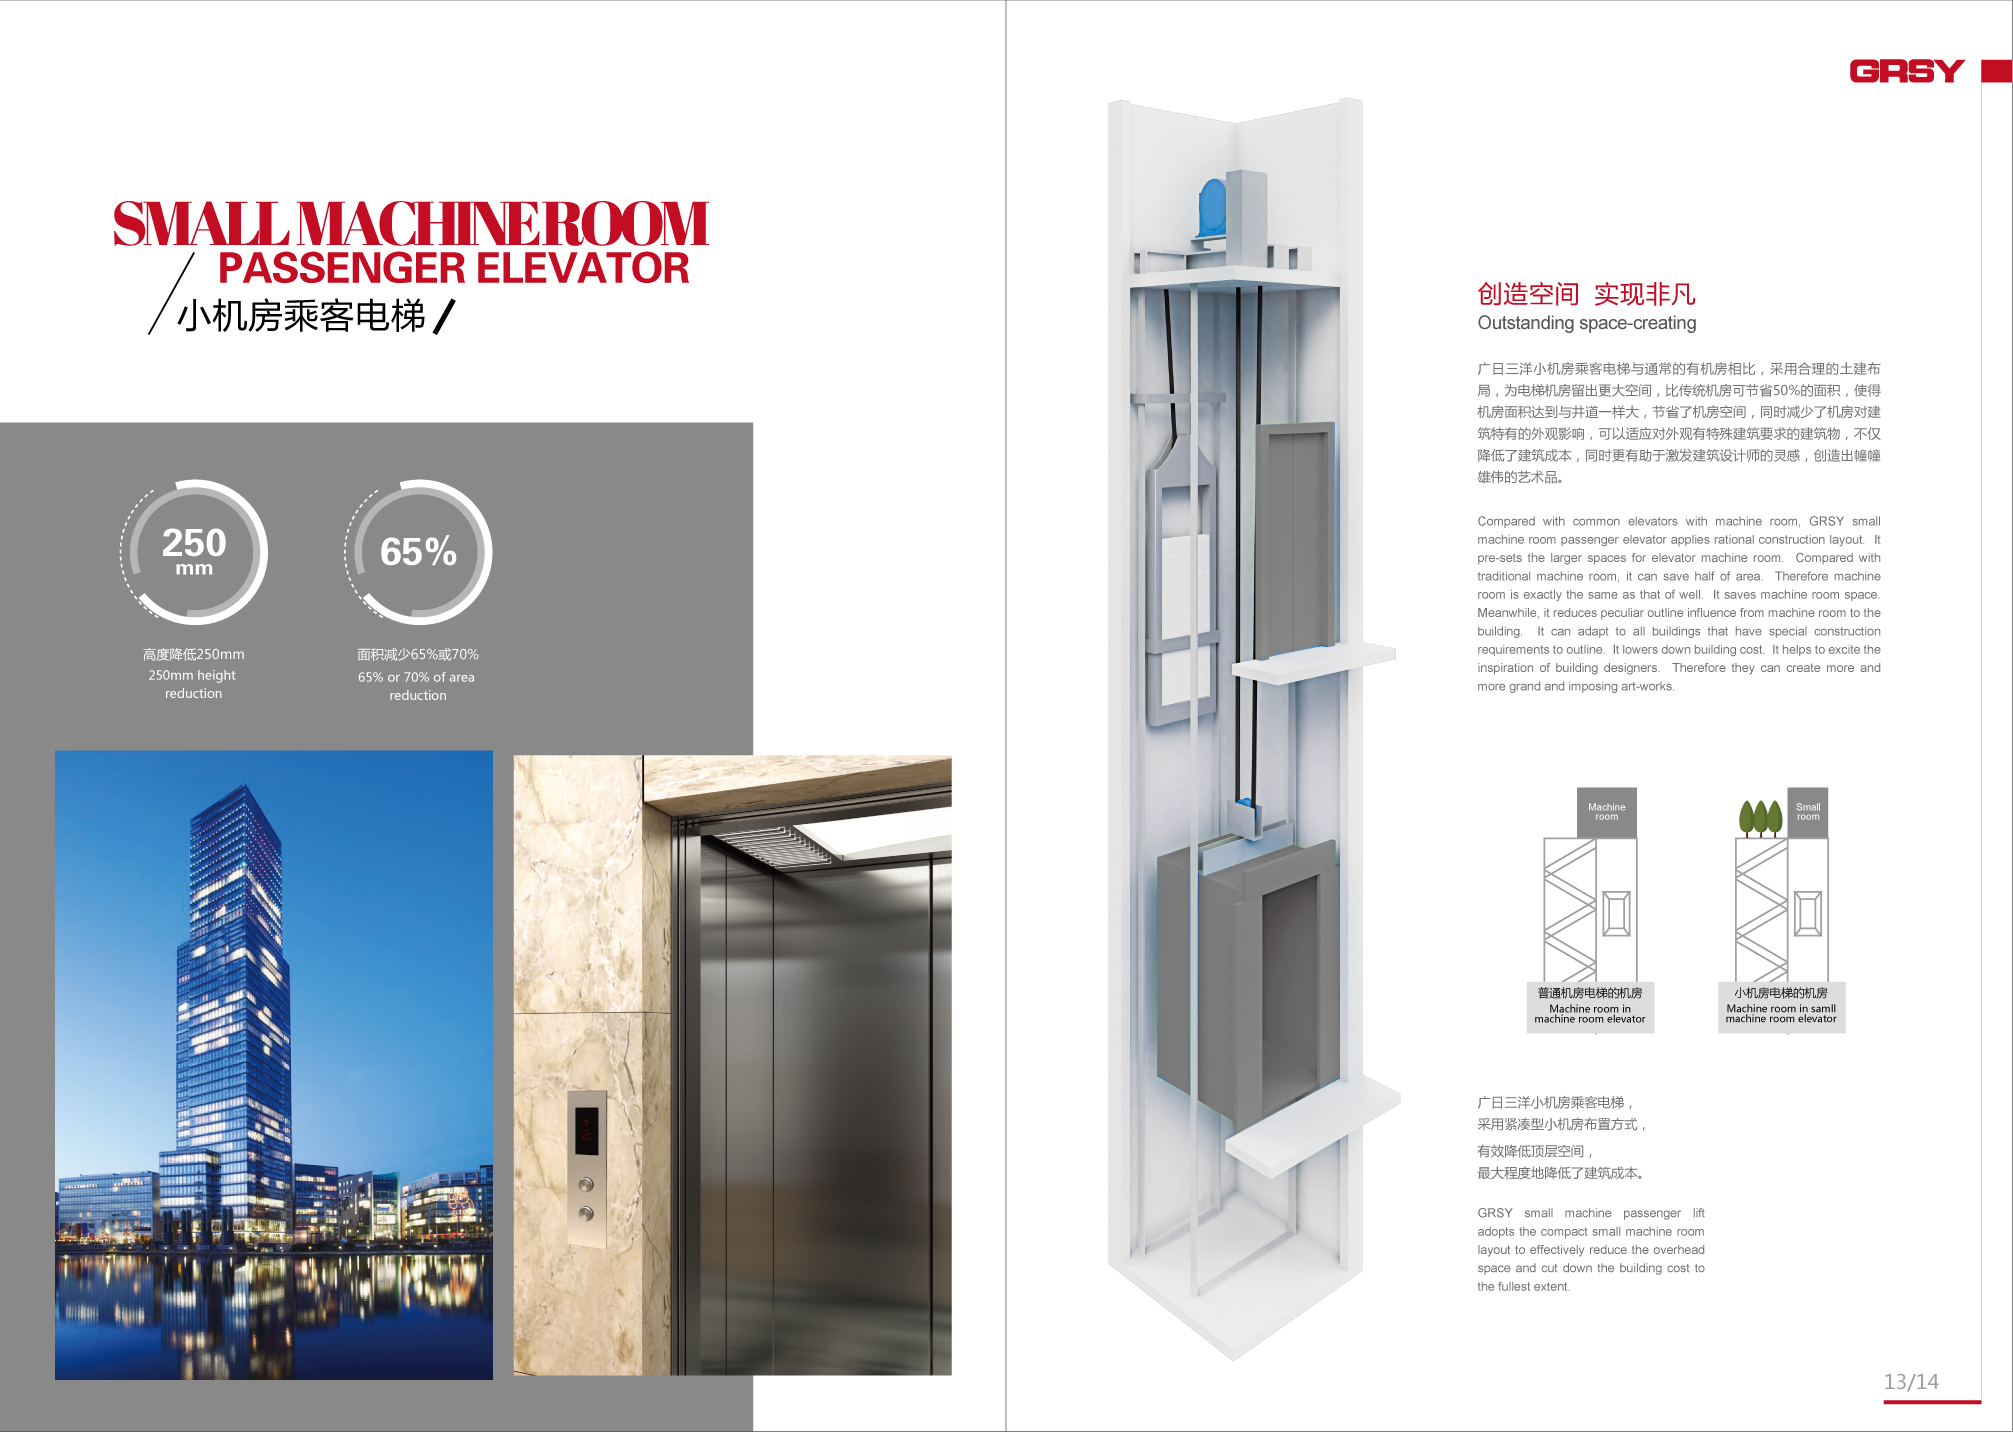 广日三洋电梯(南京)有限公司 产品中心 >小机房乘客电梯